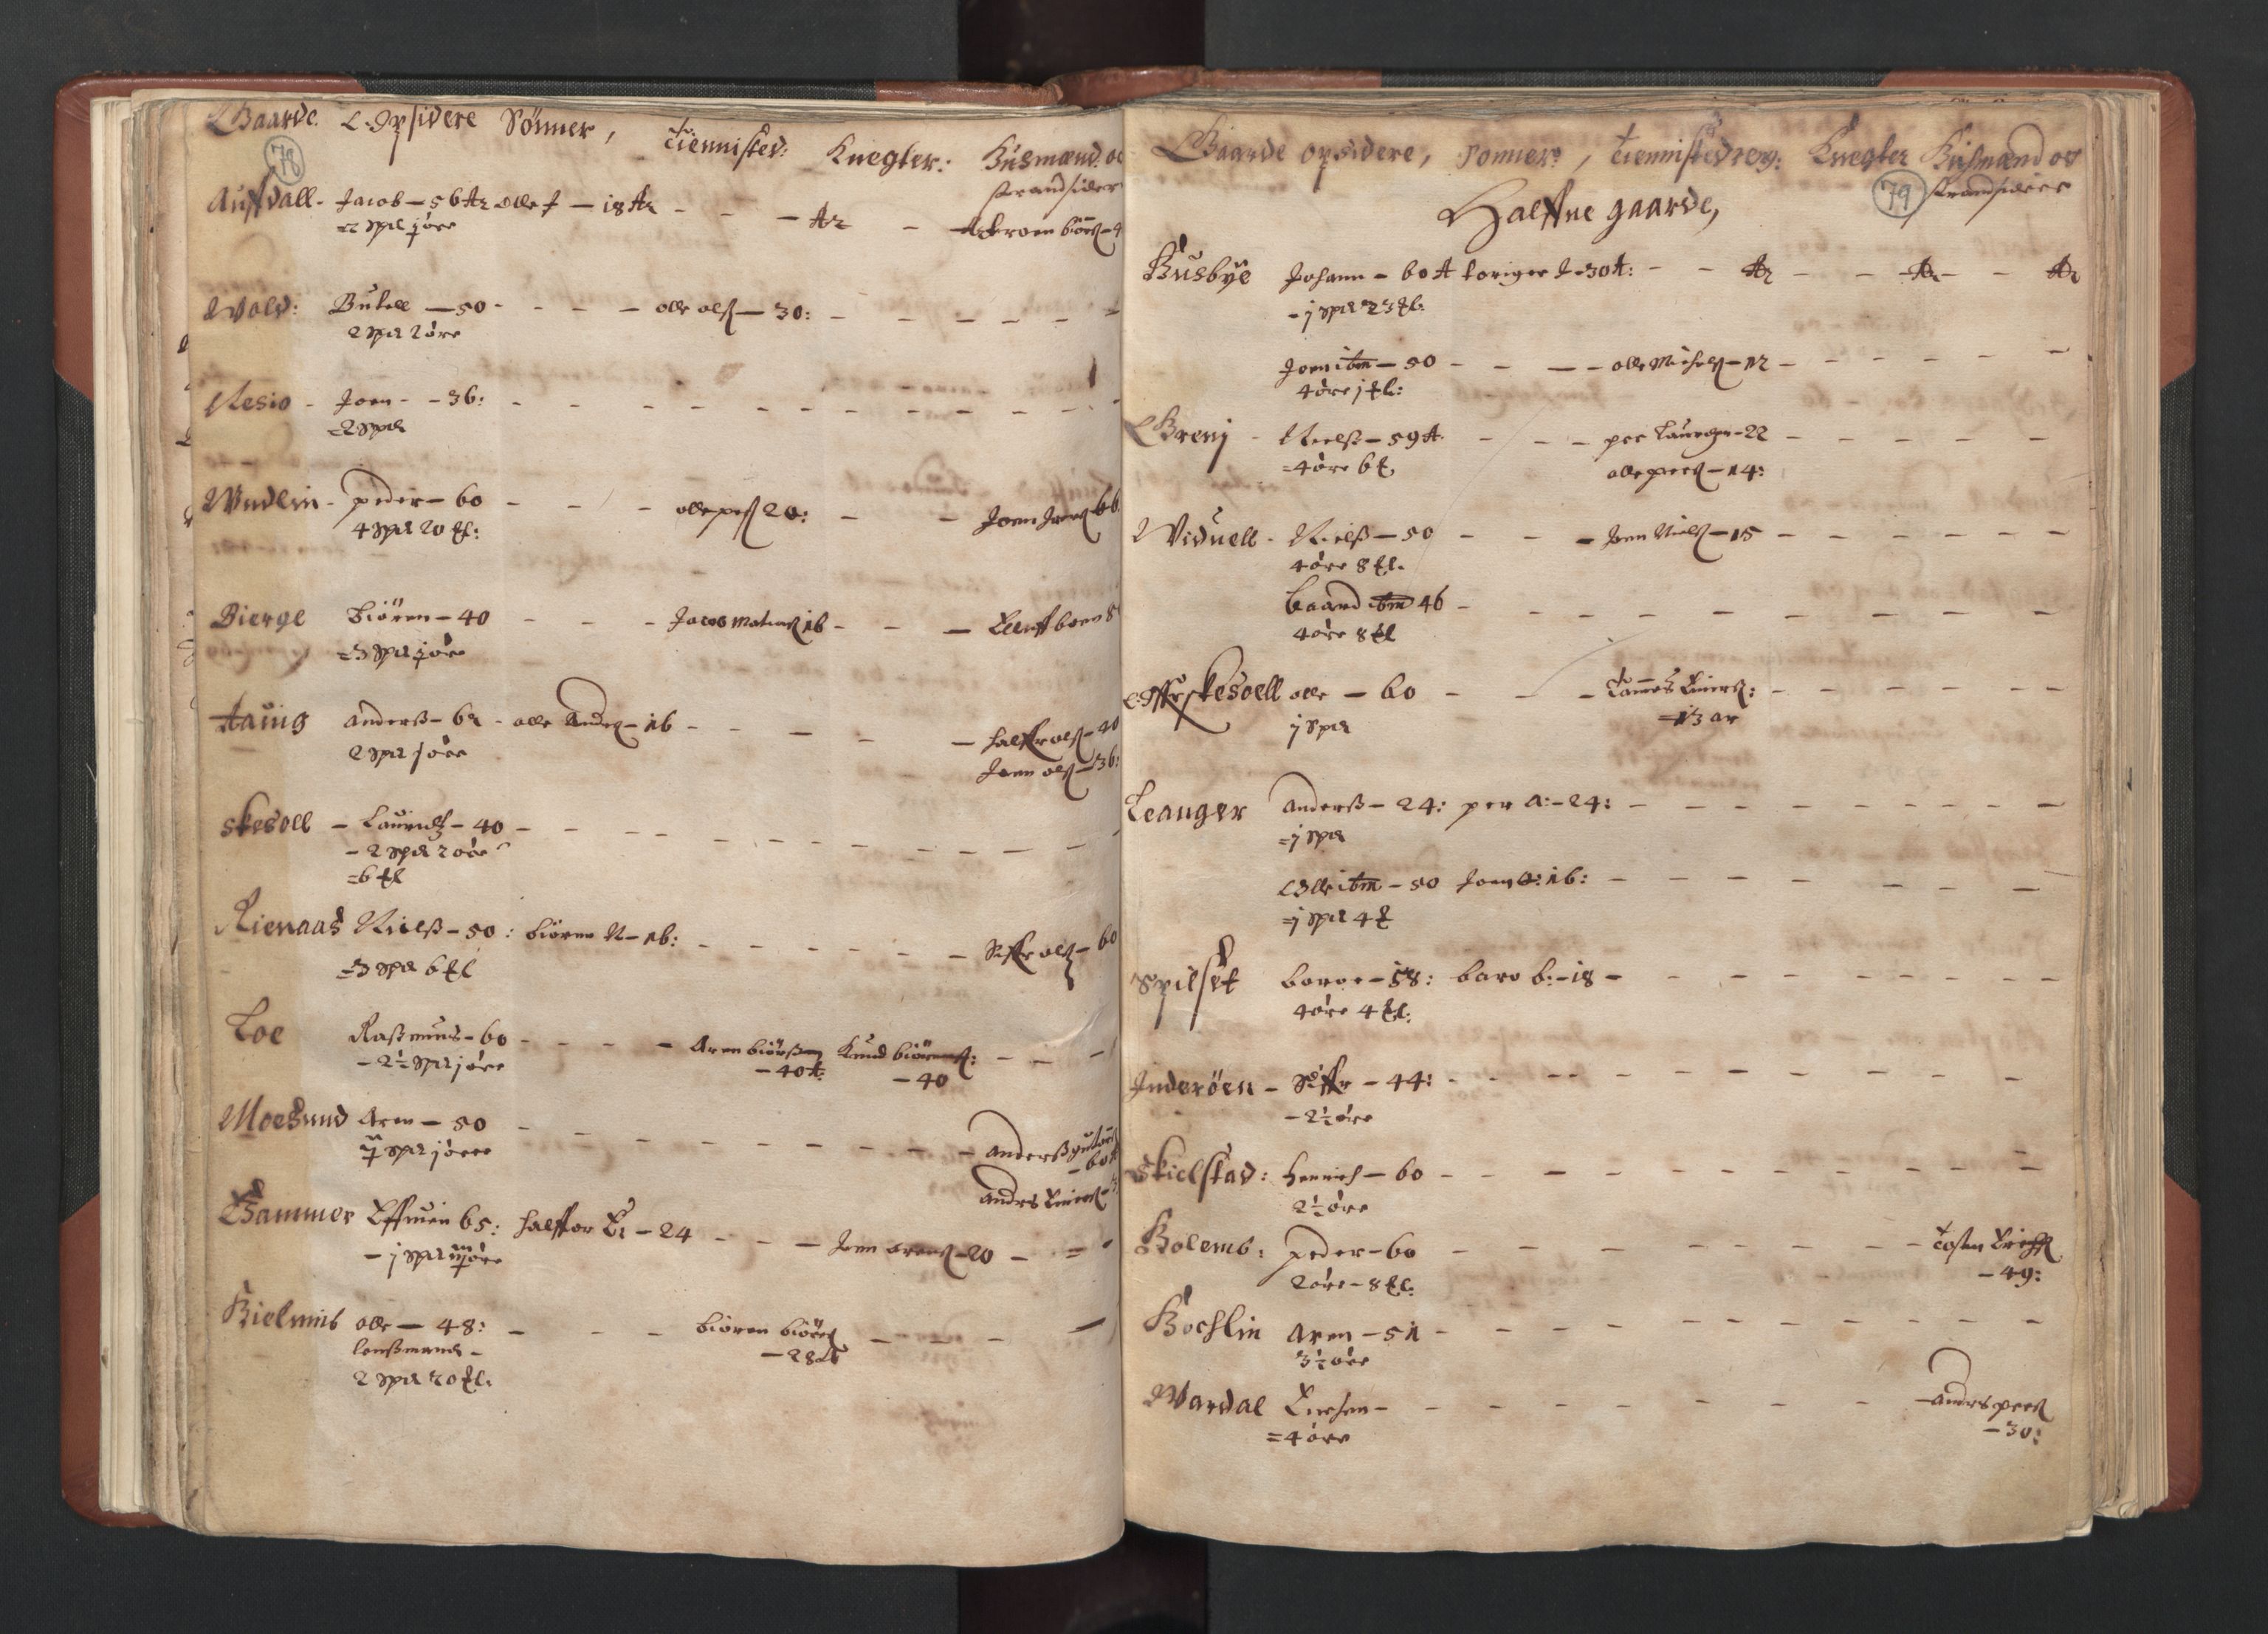 RA, Fogdenes og sorenskrivernes manntall 1664-1666, nr. 19: Fosen fogderi, Inderøy fogderi, Selbu fogderi, Namdal fogderi og Stjørdal fogderi, 1664-1665, s. 78-79